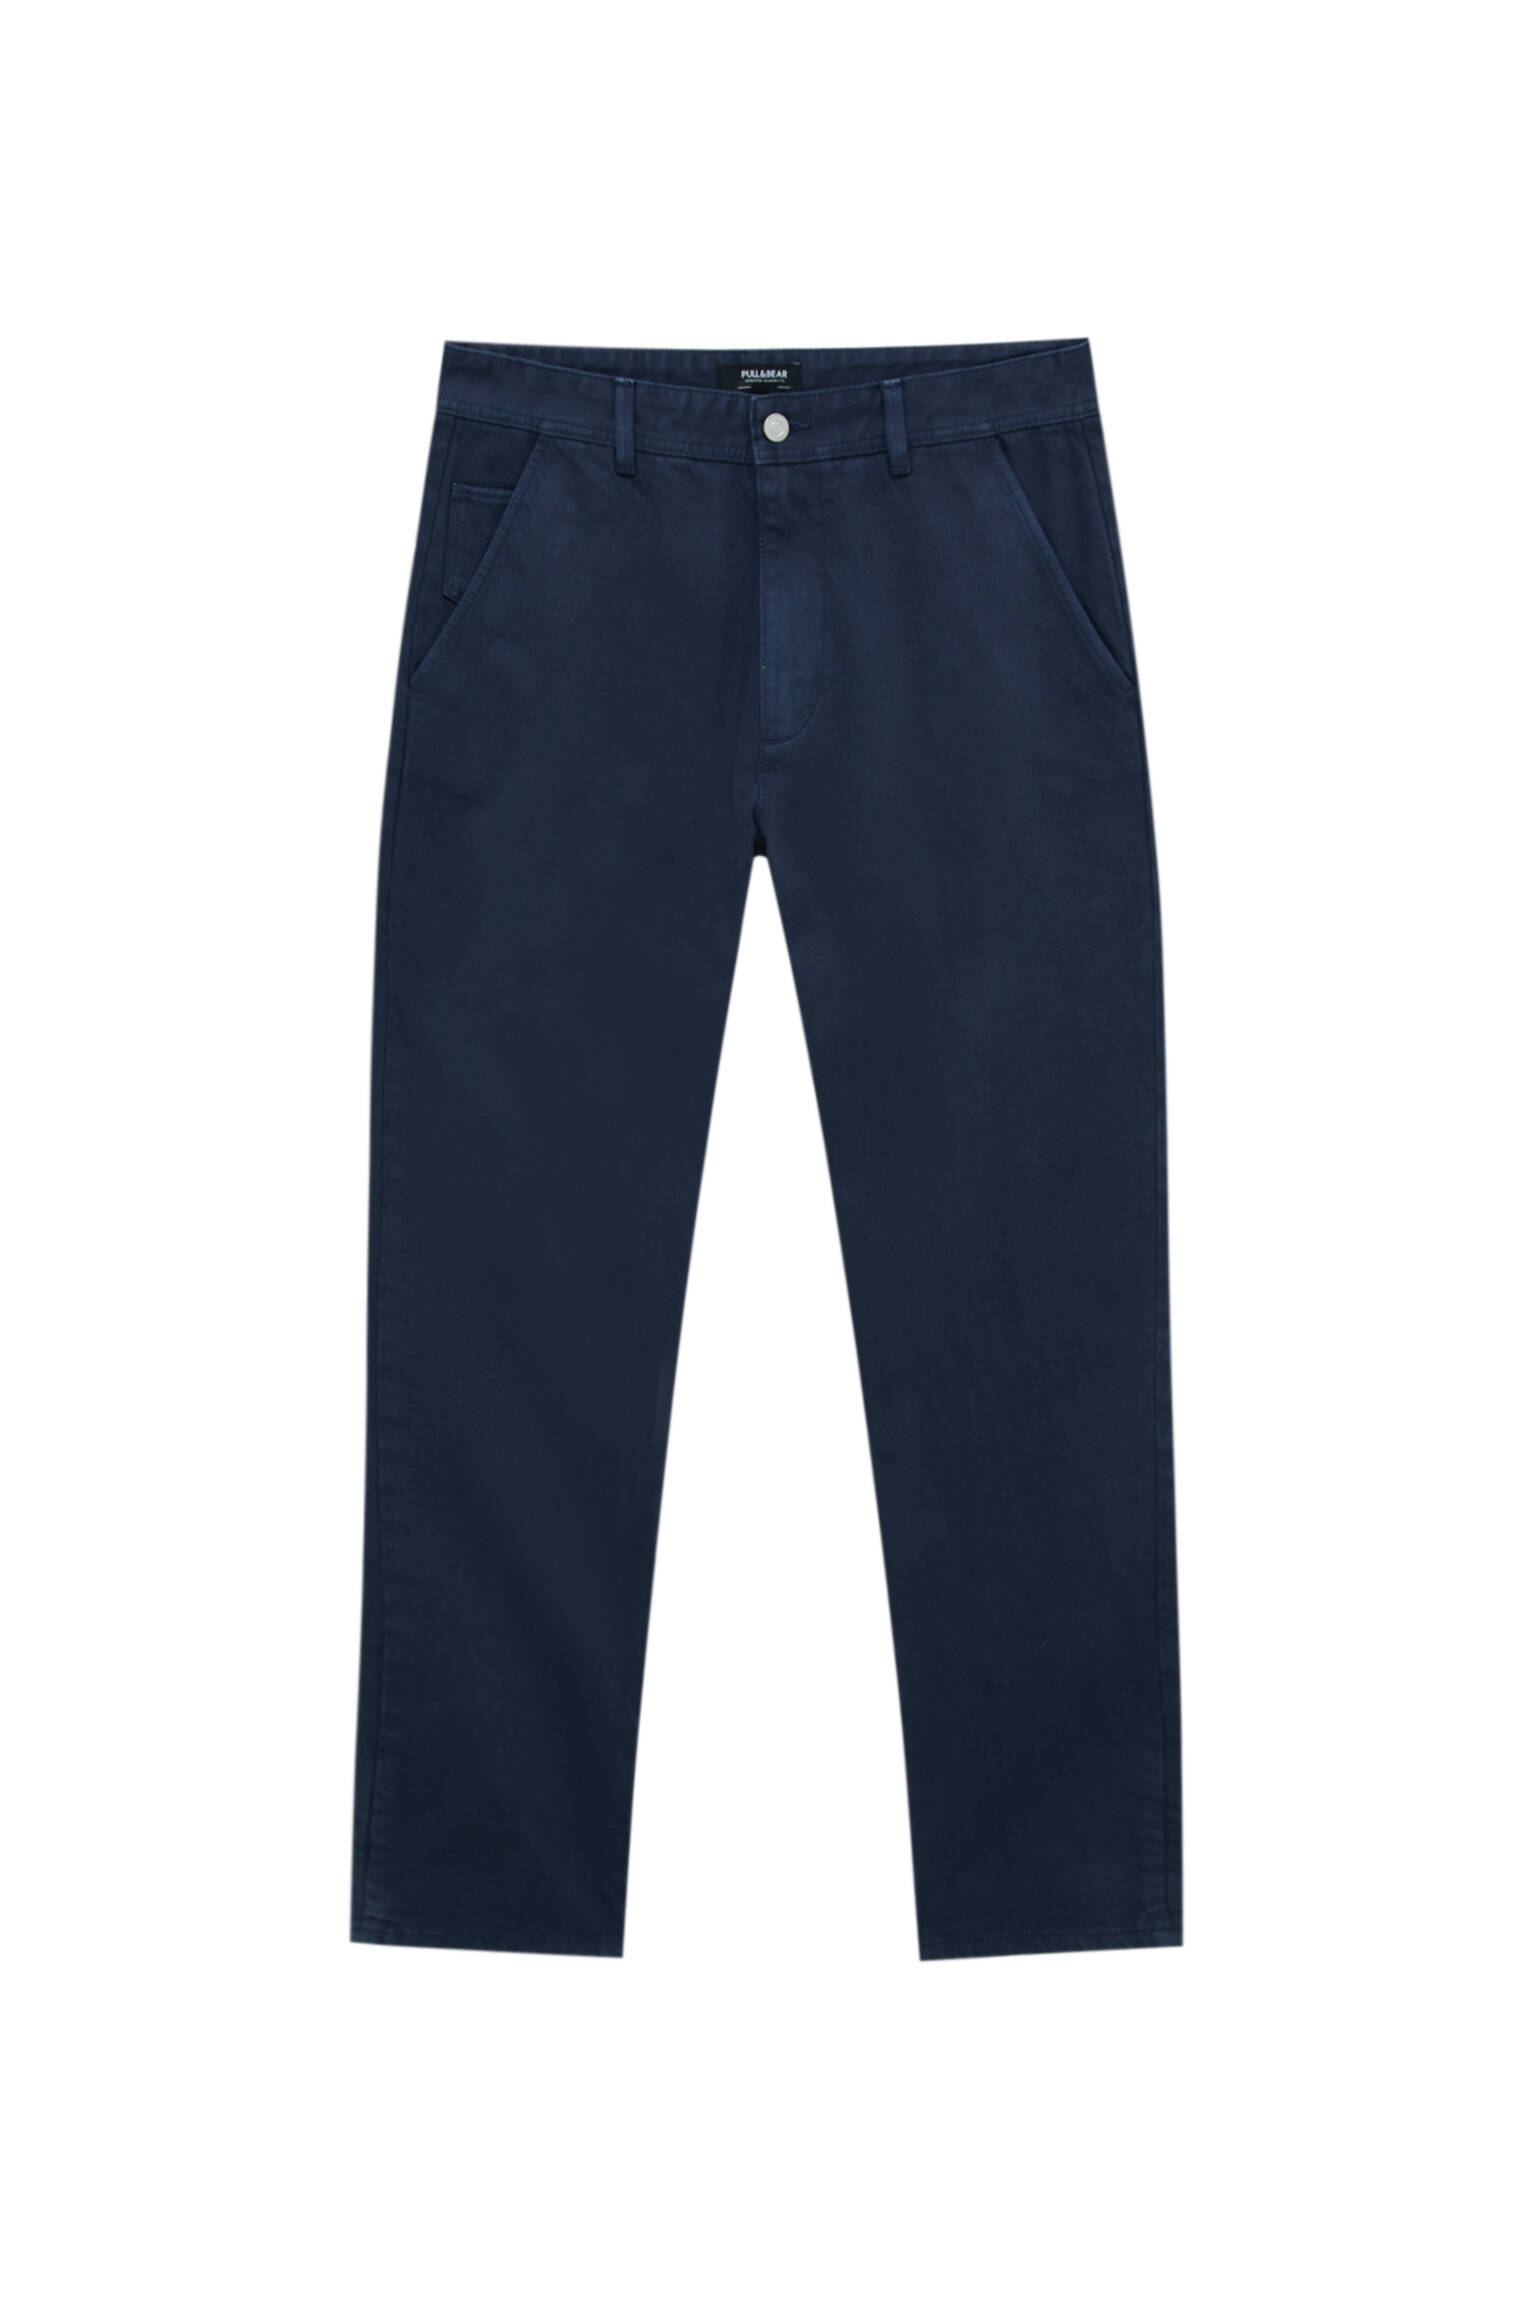 Pull&bear Homme Pantalon Chino Standard Fit 100 % Coton Avec Poches, Passants De Ceinture à La Taille, Fermeture Éclair Et Bouton. Bleu Marine 44